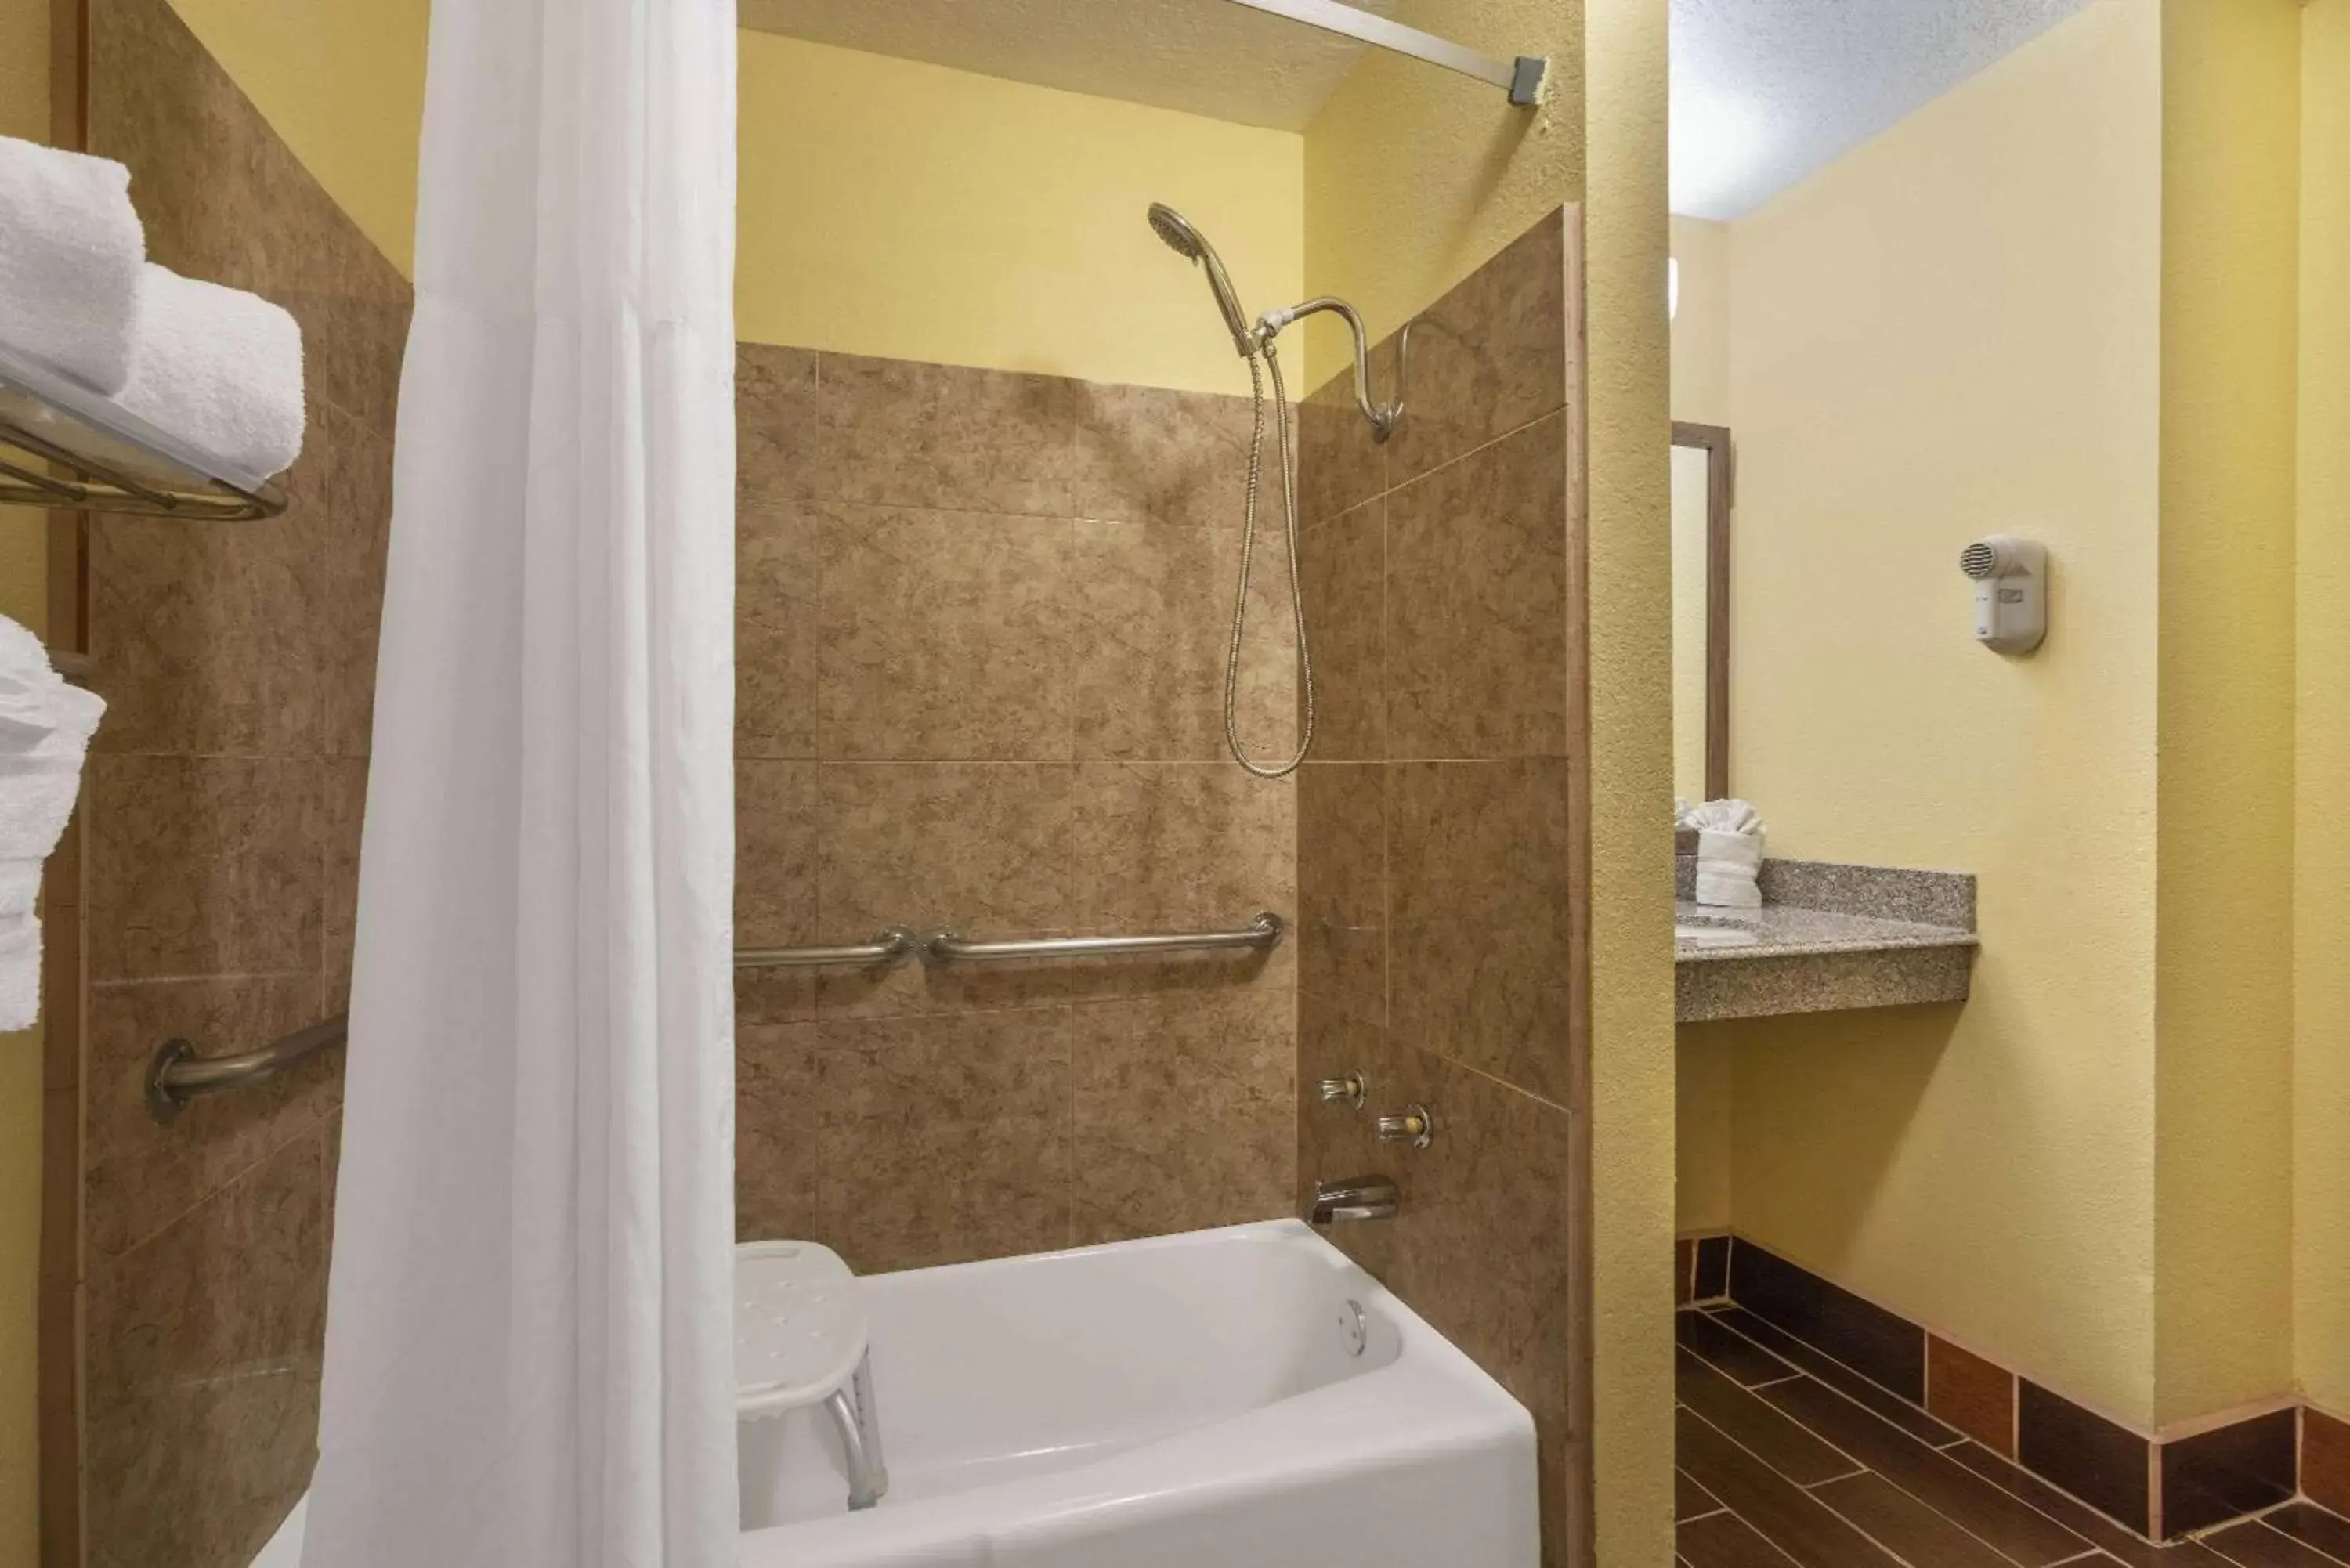 TV and multimedia, Bathroom in Days Inn by Wyndham Tucumcari